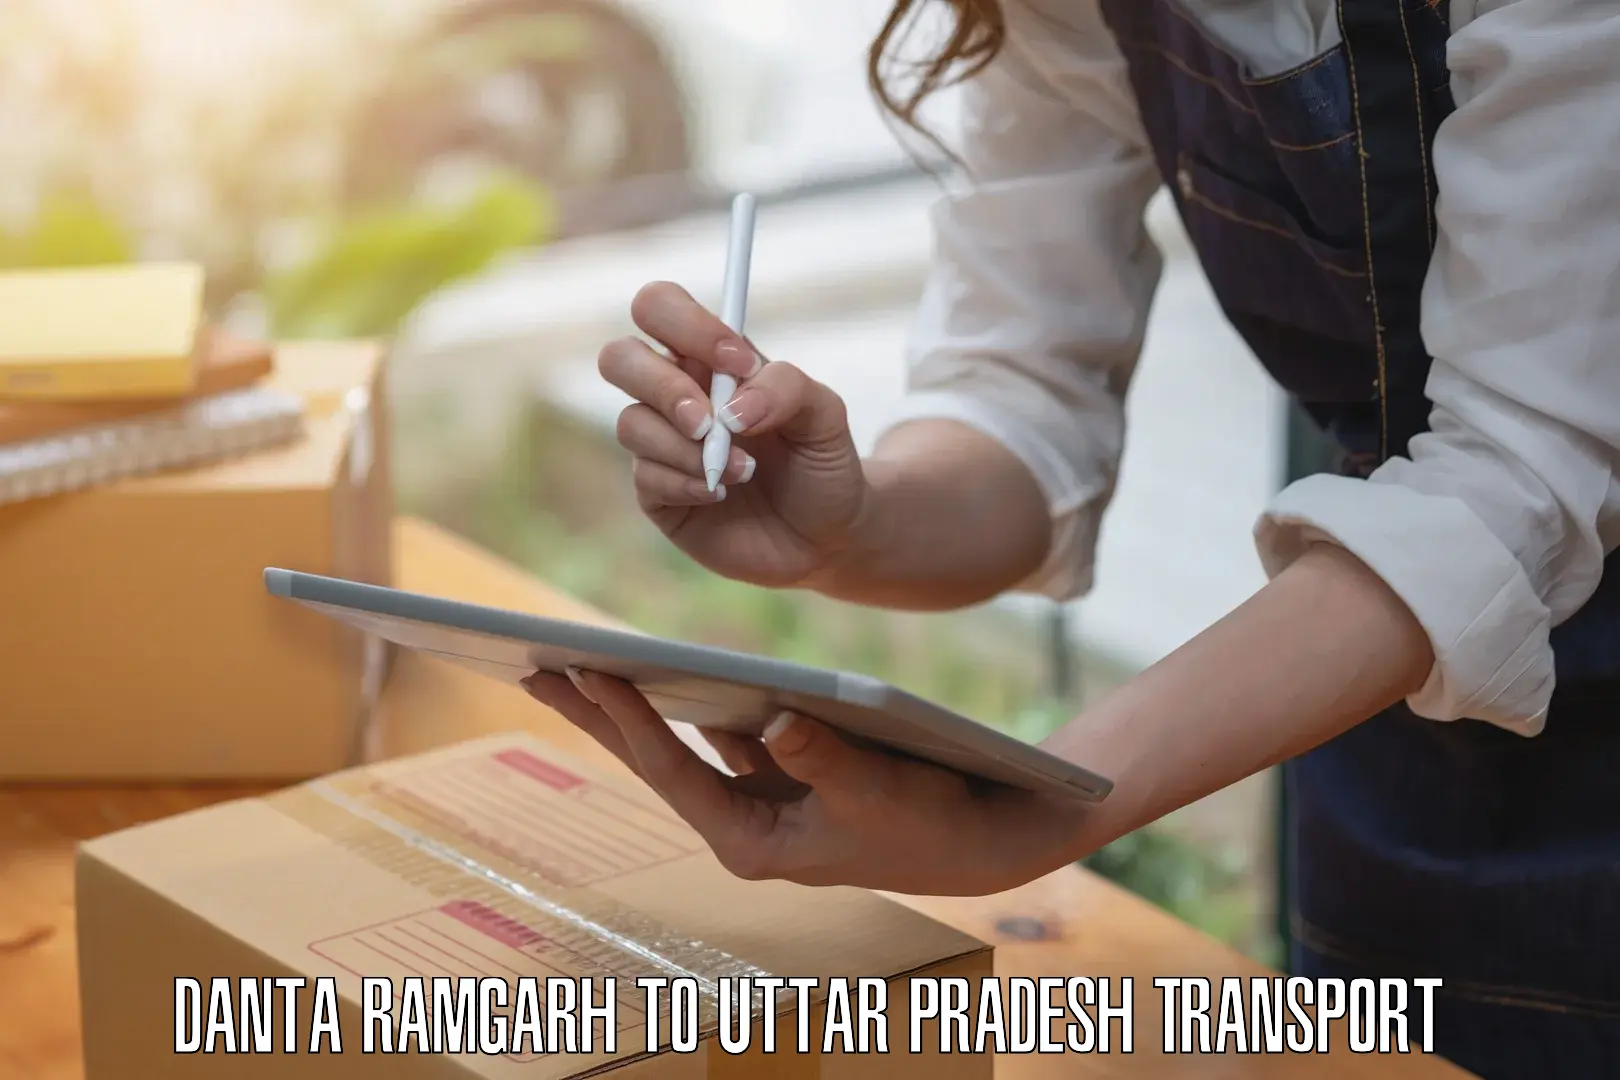 Express transport services Danta Ramgarh to Uttar Pradesh